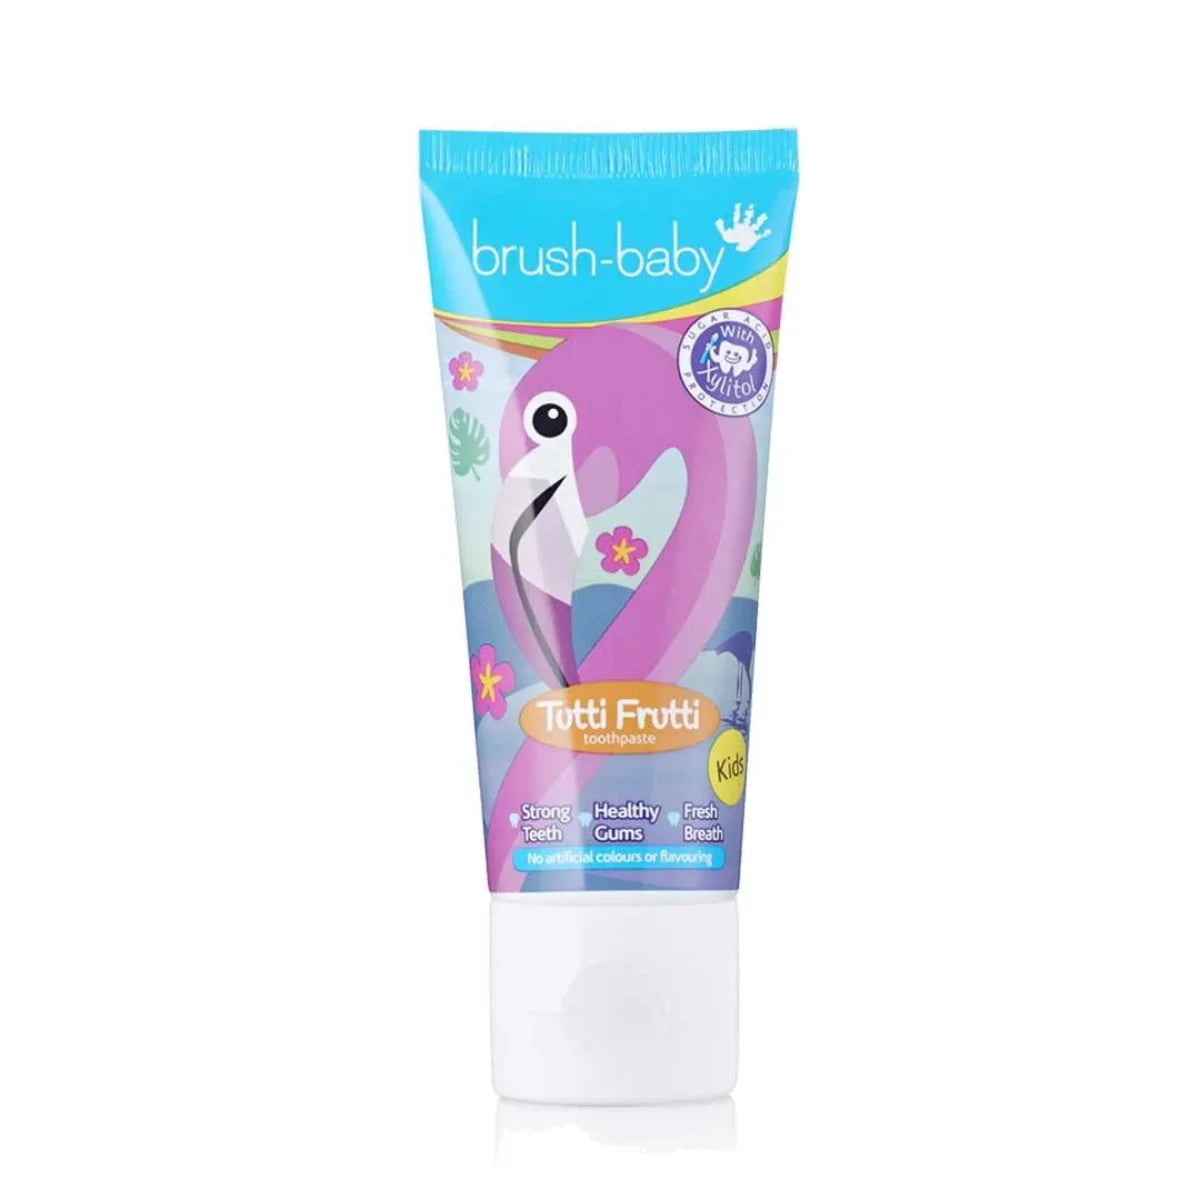 Kids Tutti-Frutti Toothpaste  Award-Winning Kids Toothpaste